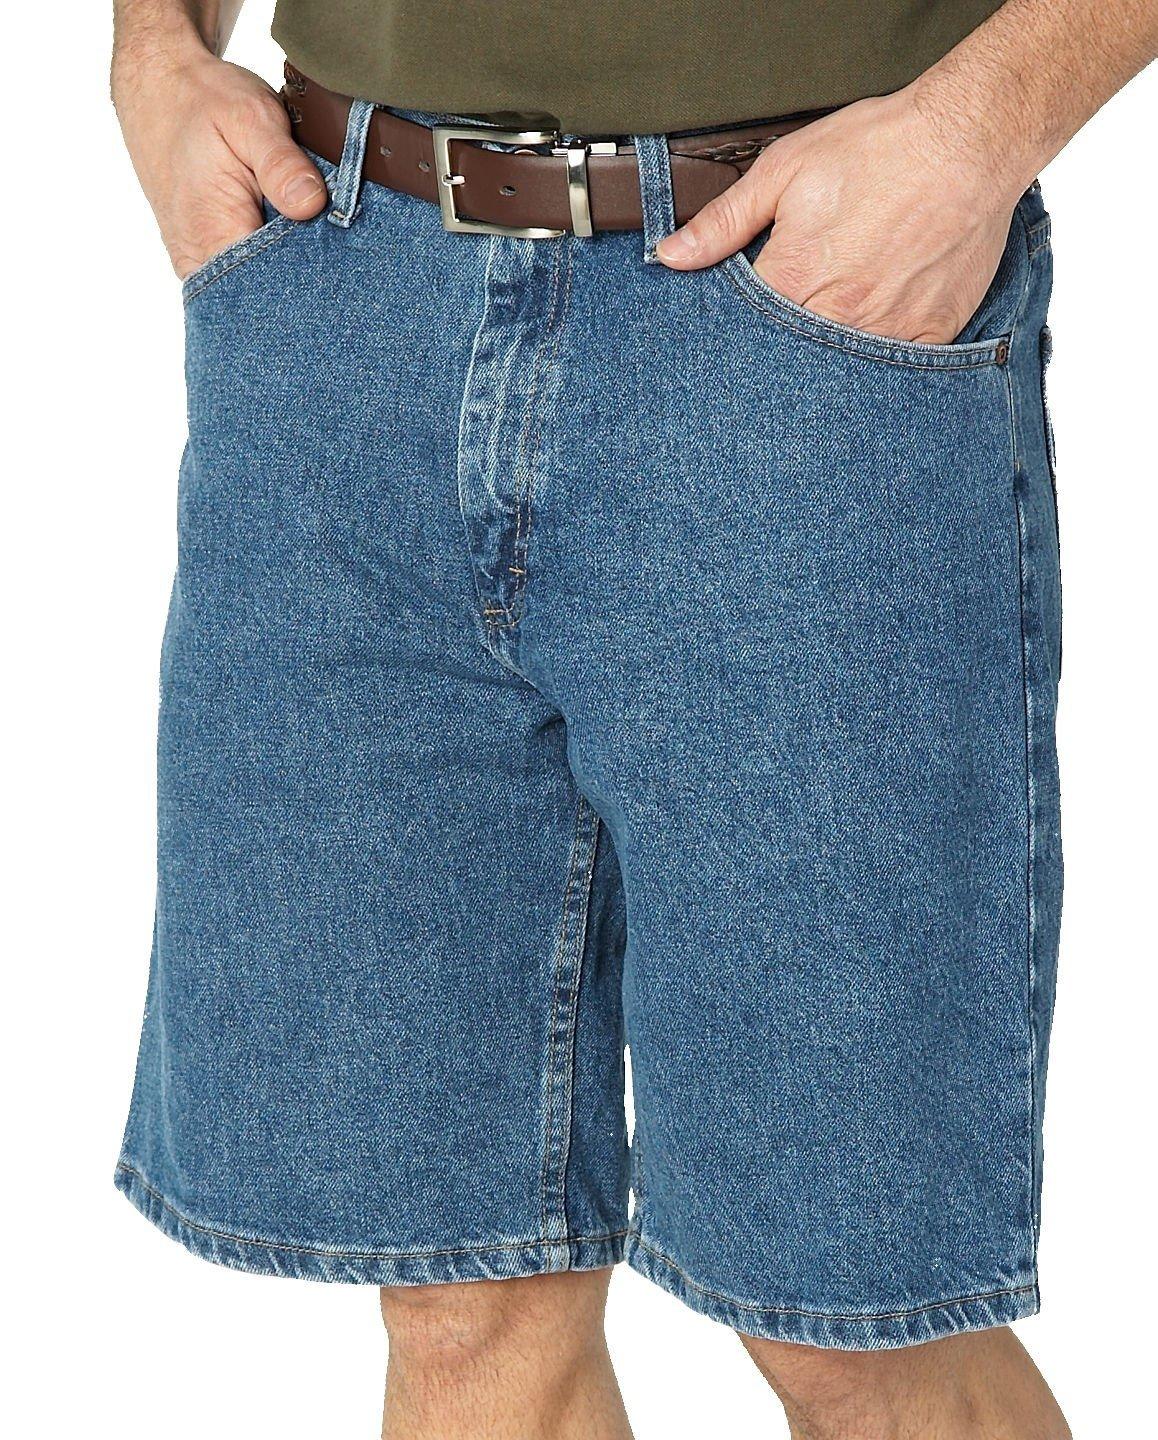 denim blue jean shorts